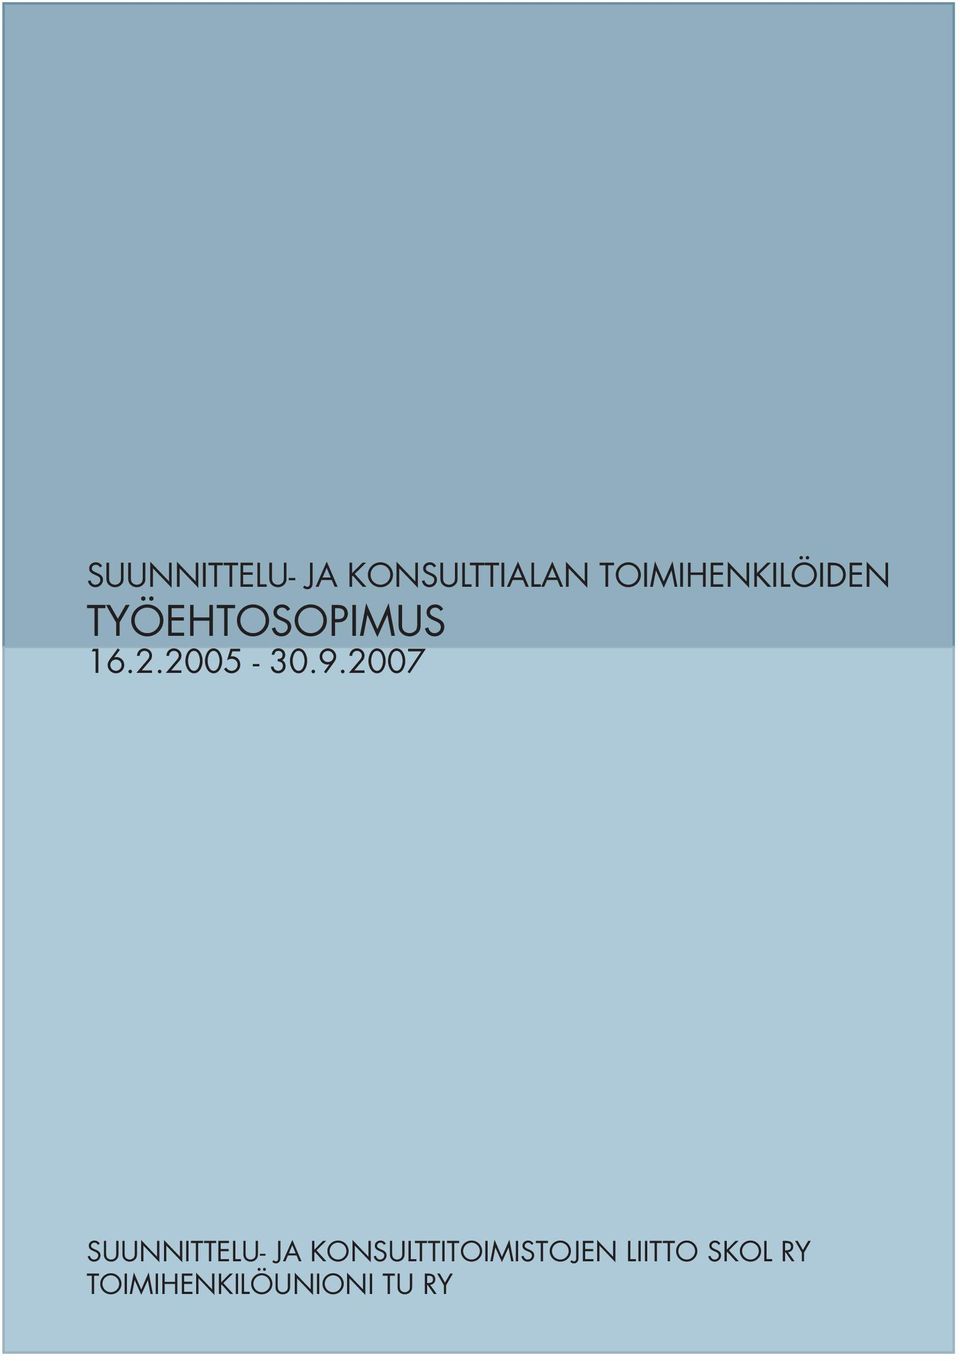 2005-30.9.